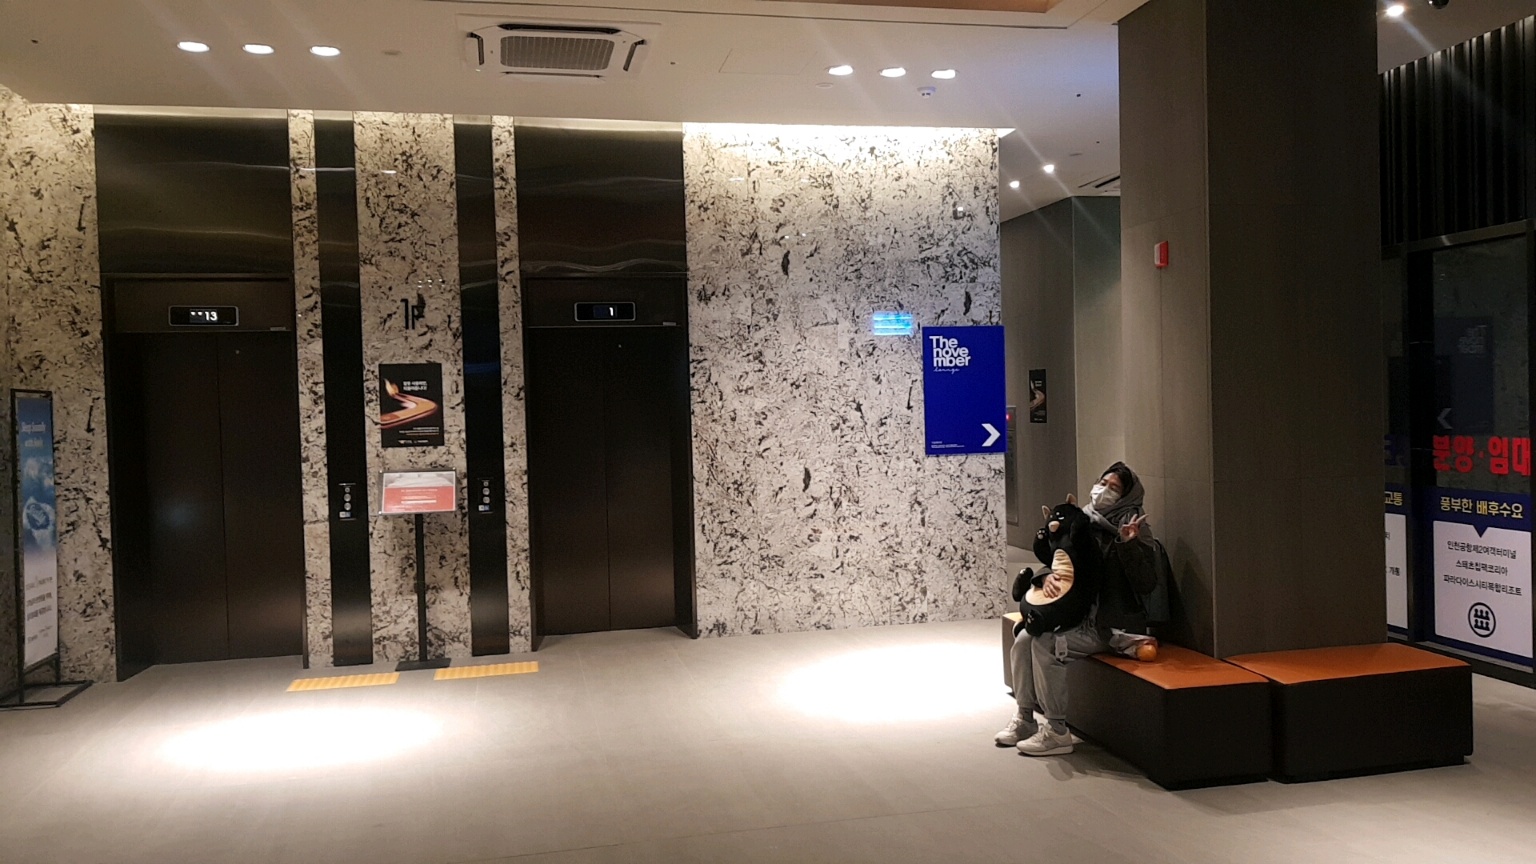 영종도 3성급 호텔 오션파크나인 - 1층 로비